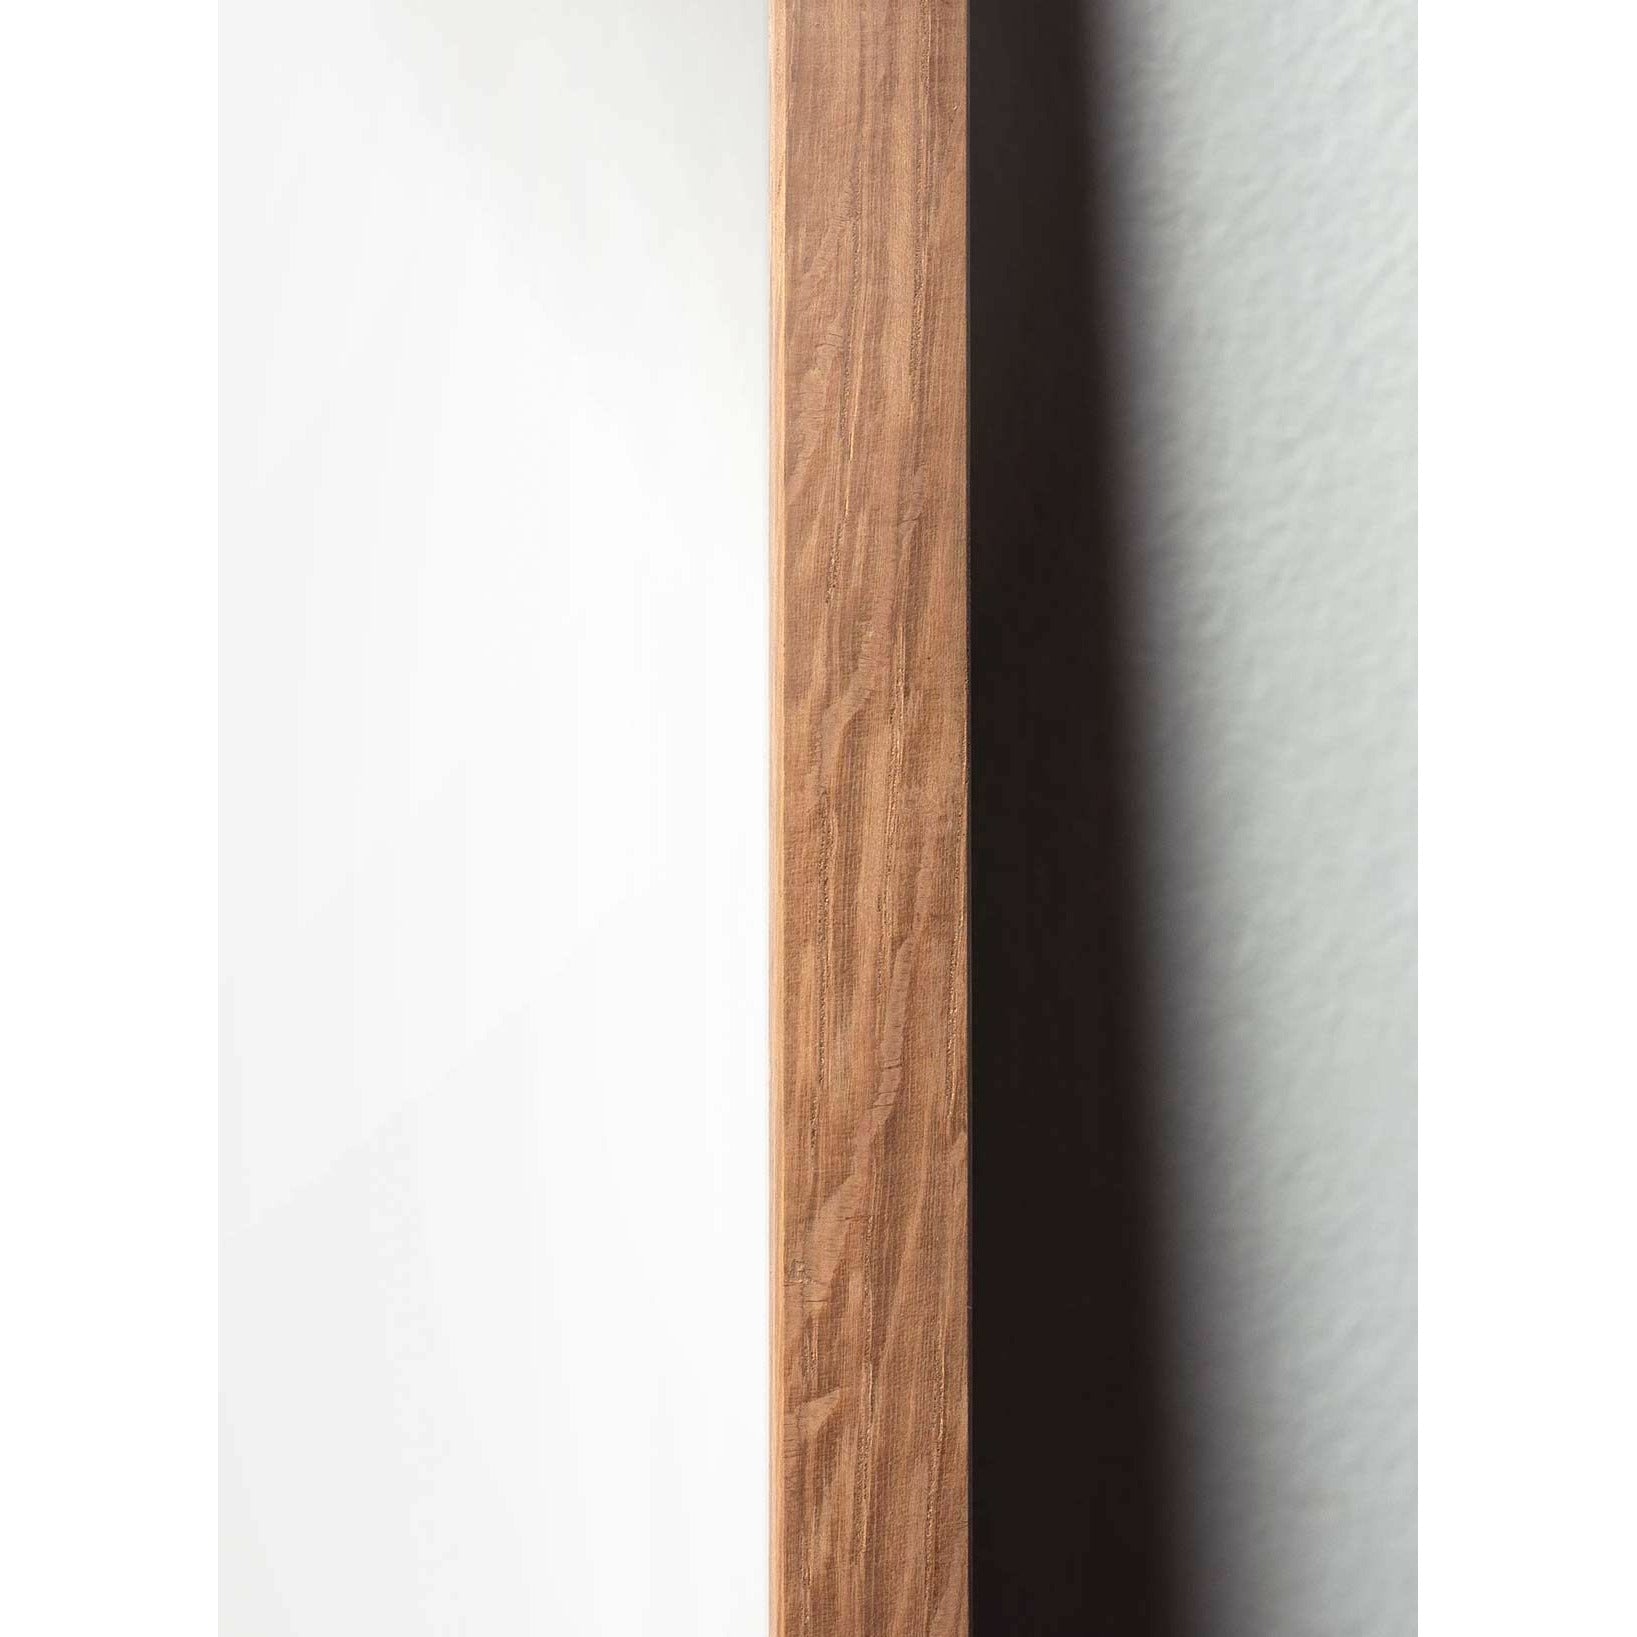 Póster clásico de Swan Swan, marco hecho de madera clara de 70x100 cm, fondo negro/negro